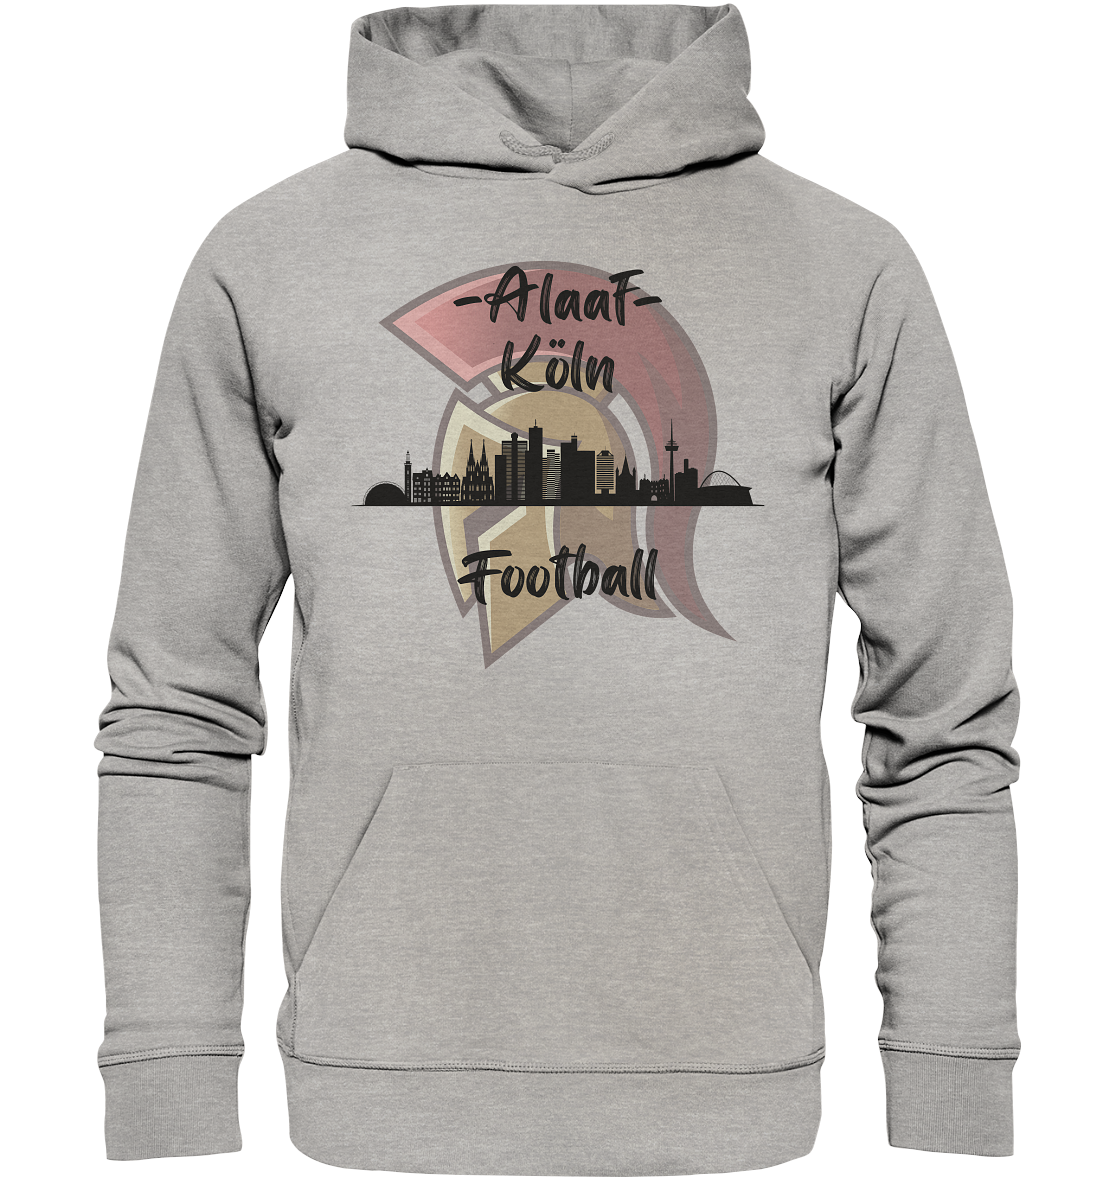 Alaaf - Köln Football - Organic Basic Hoodie - Football Unity Football Unity